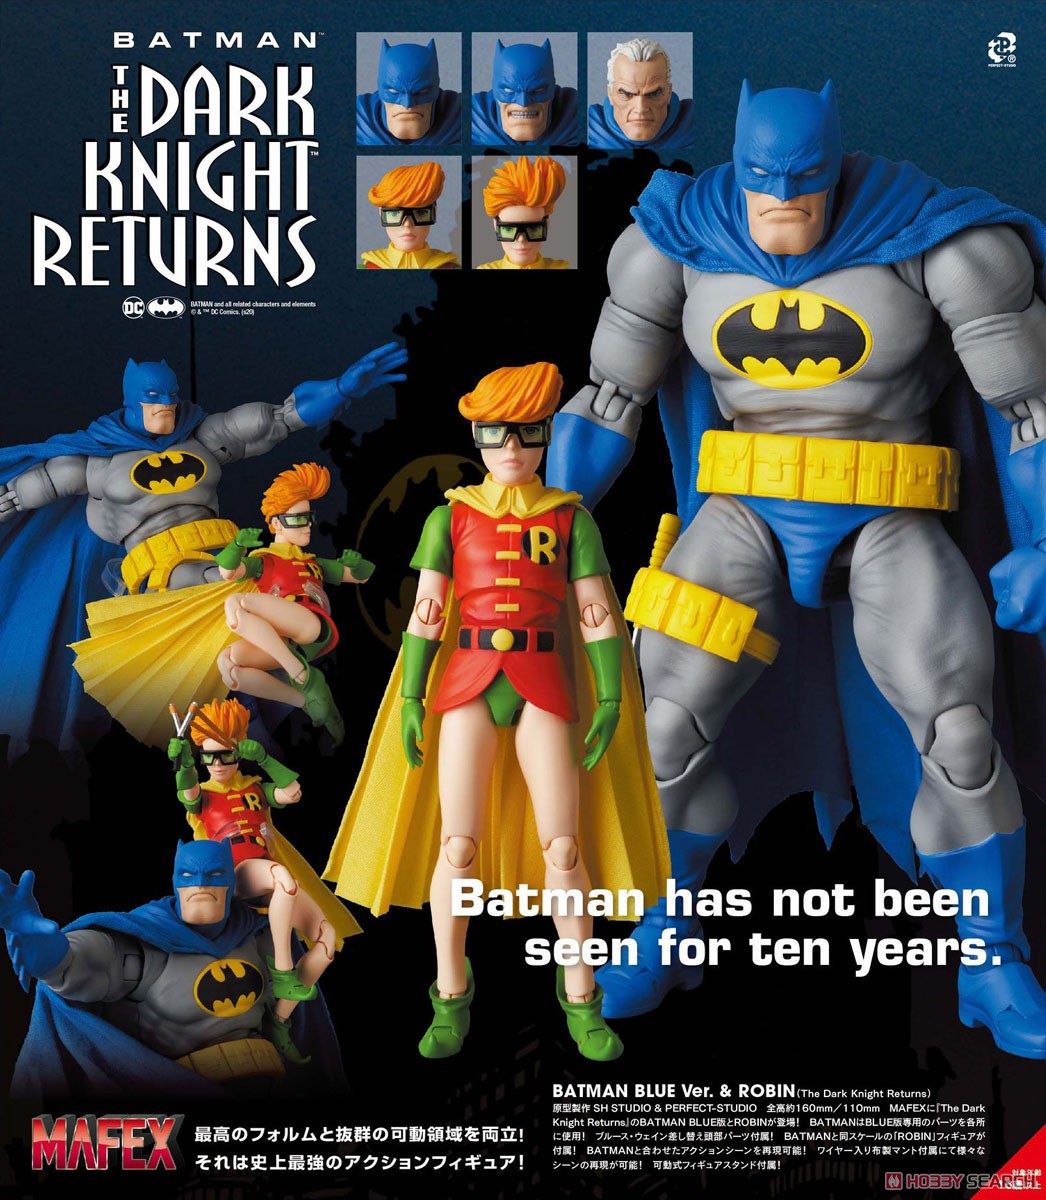 バットマン マフェックス バットマン ロビン Mafex Batman Blue Ver Robin The Dark Knight Returns Mafex 可動フィギュア メディコム トイ より21年6月発売予定 人気フィギュア安値で予約 トイゲット Blog